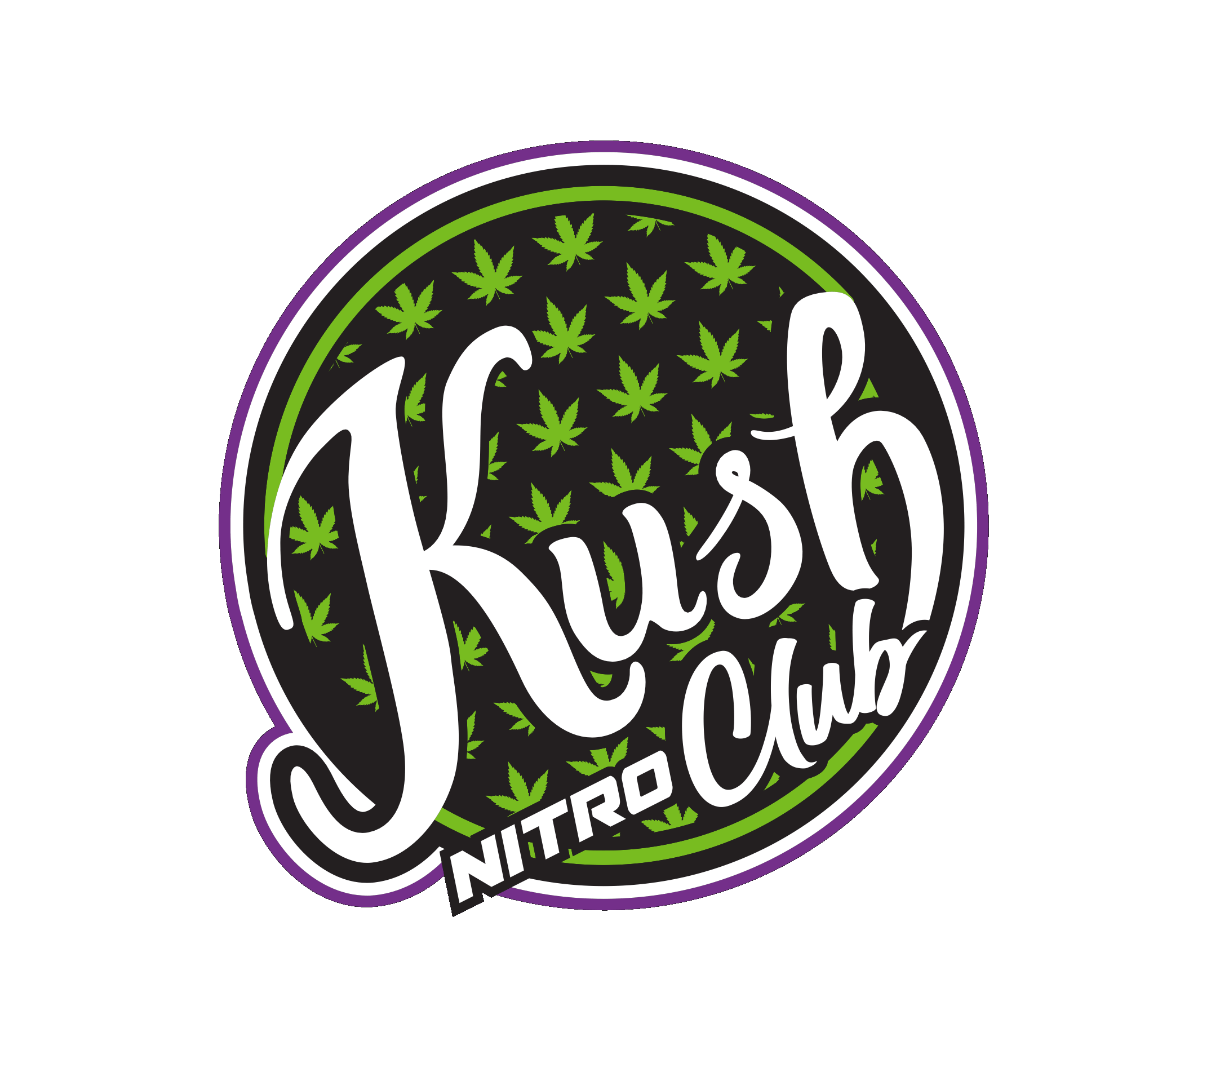 Kush Nitro Club